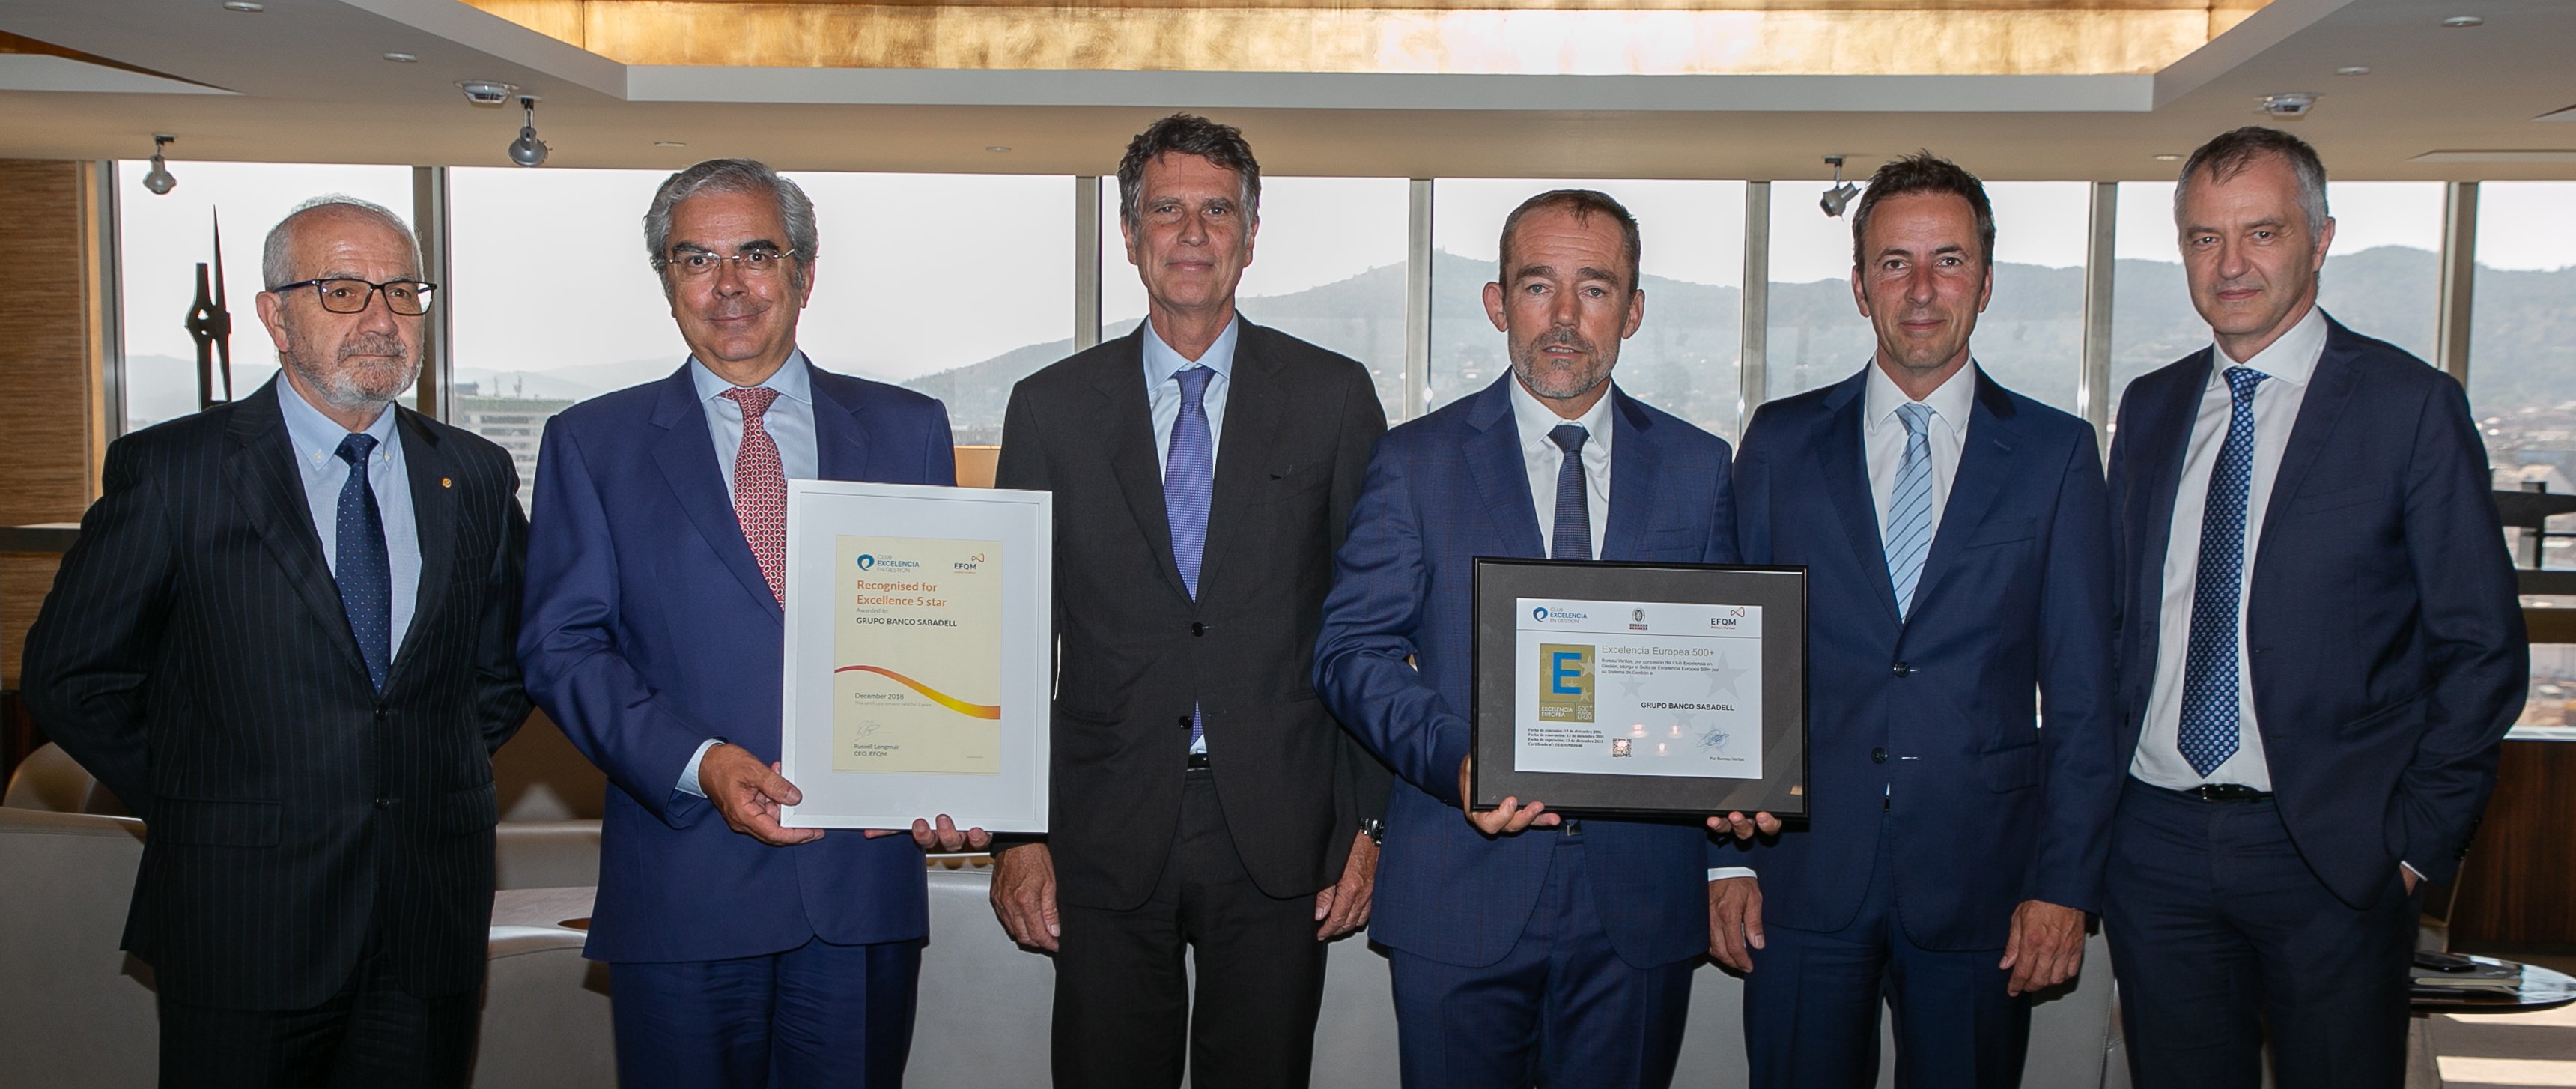 Banc Sabadell renueva el Sello de Excelencia EFQM